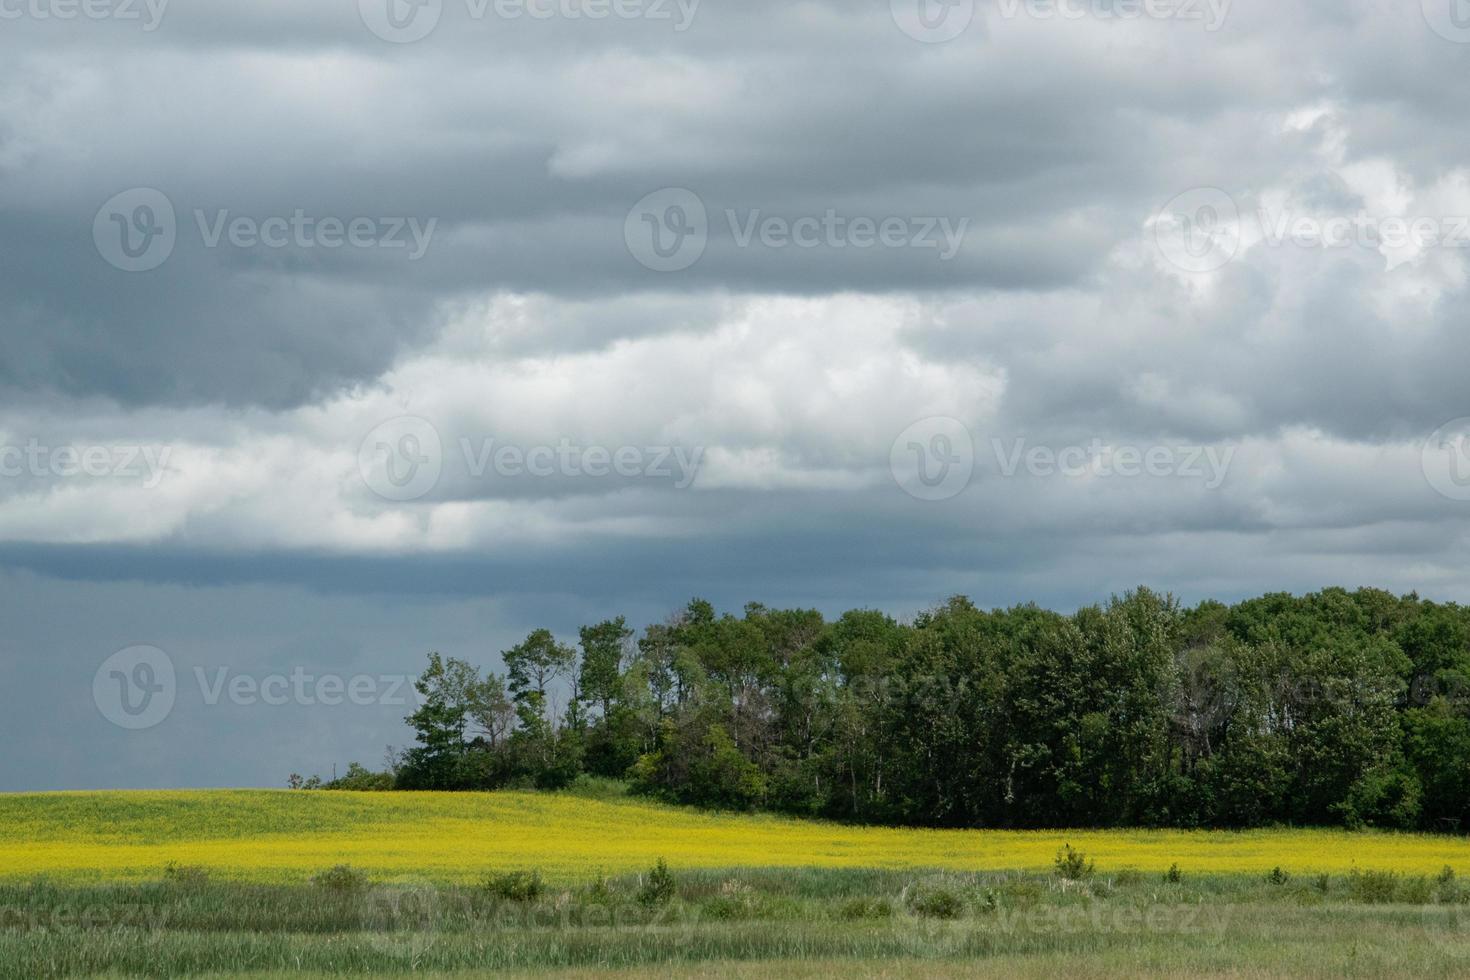 tierras agrícolas y cultivos de canola, saskatchewan, canadá. foto